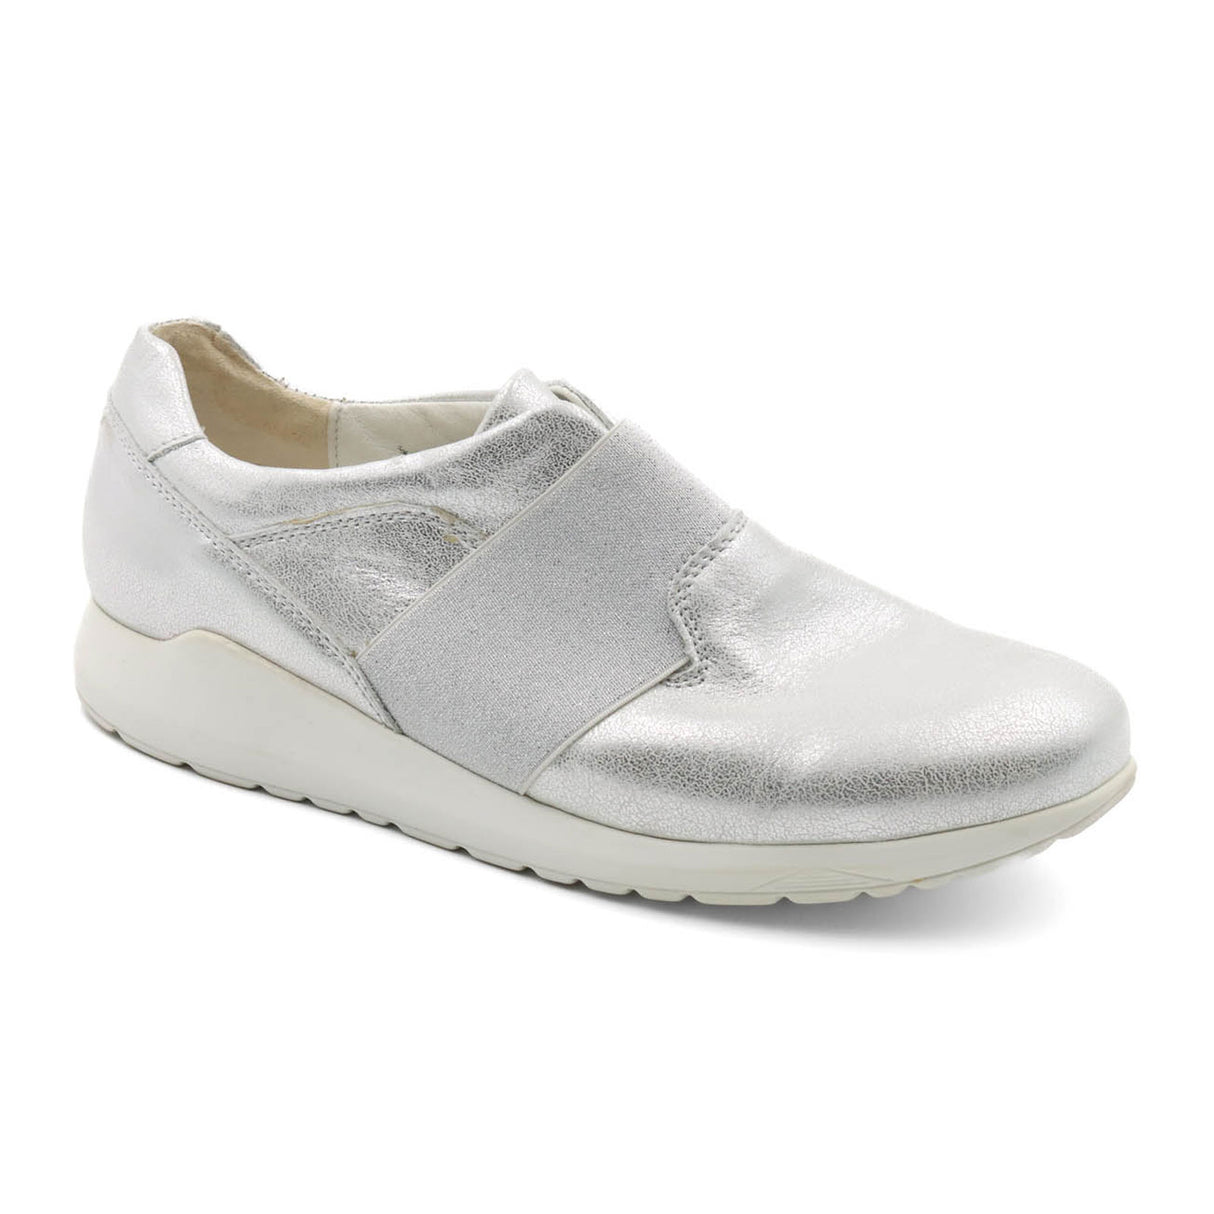 Waldlaufer Cambrie 982501 Slip On Sneaker (Women) - Silver Dress-Casual - Sneakers - The Heel Shoe Fitters